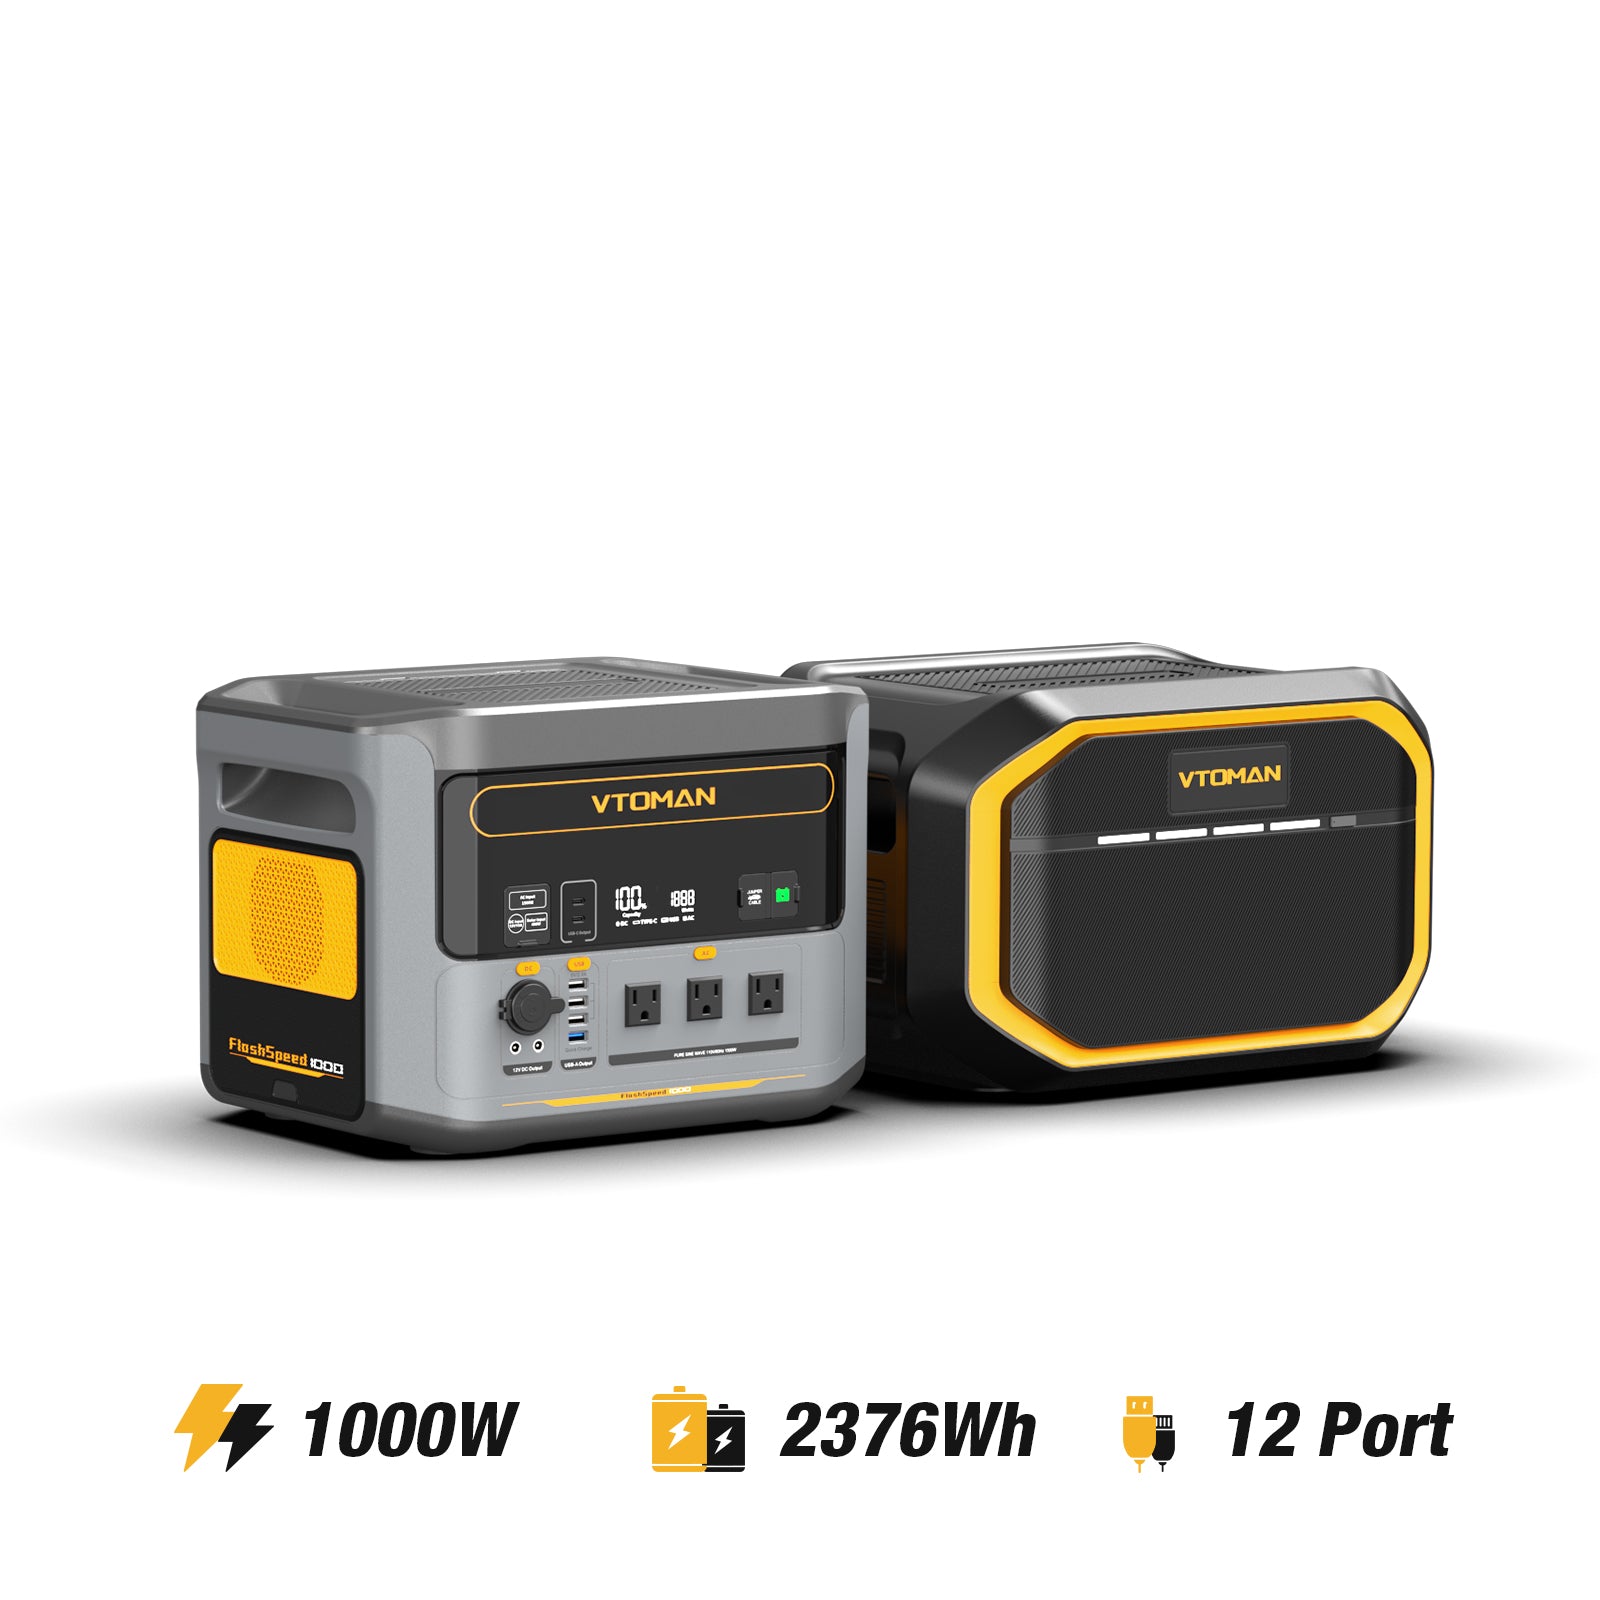 Batería adicional VTOMAN 1548Wh compatible con FlashSpeed ​​1500